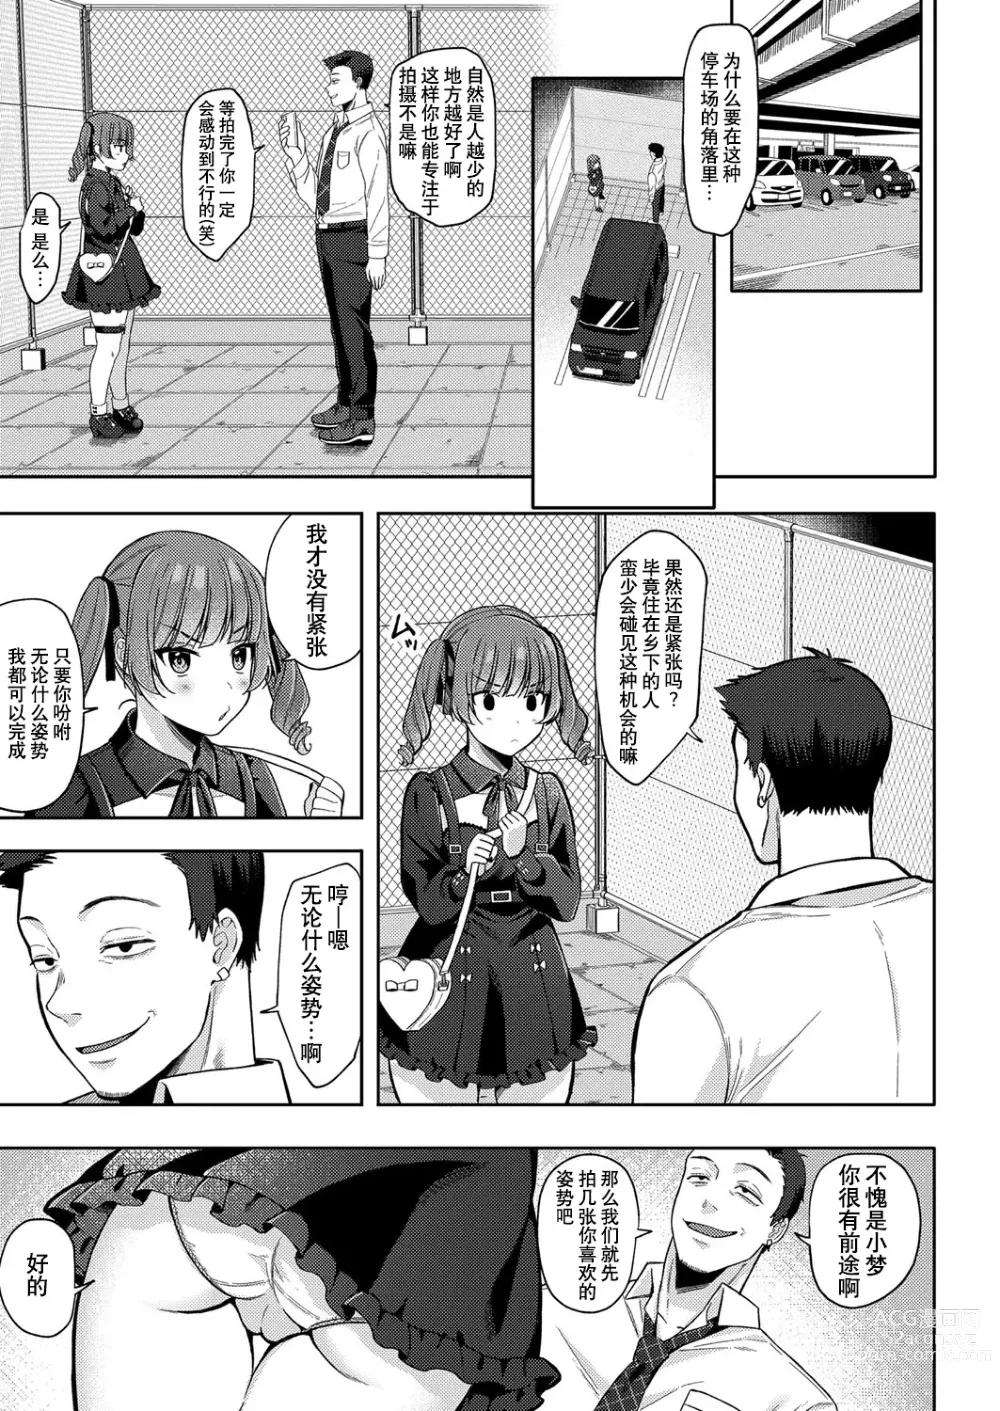 Page 7 of manga Yumemiru Masegaki ~Hatsudori Debut~